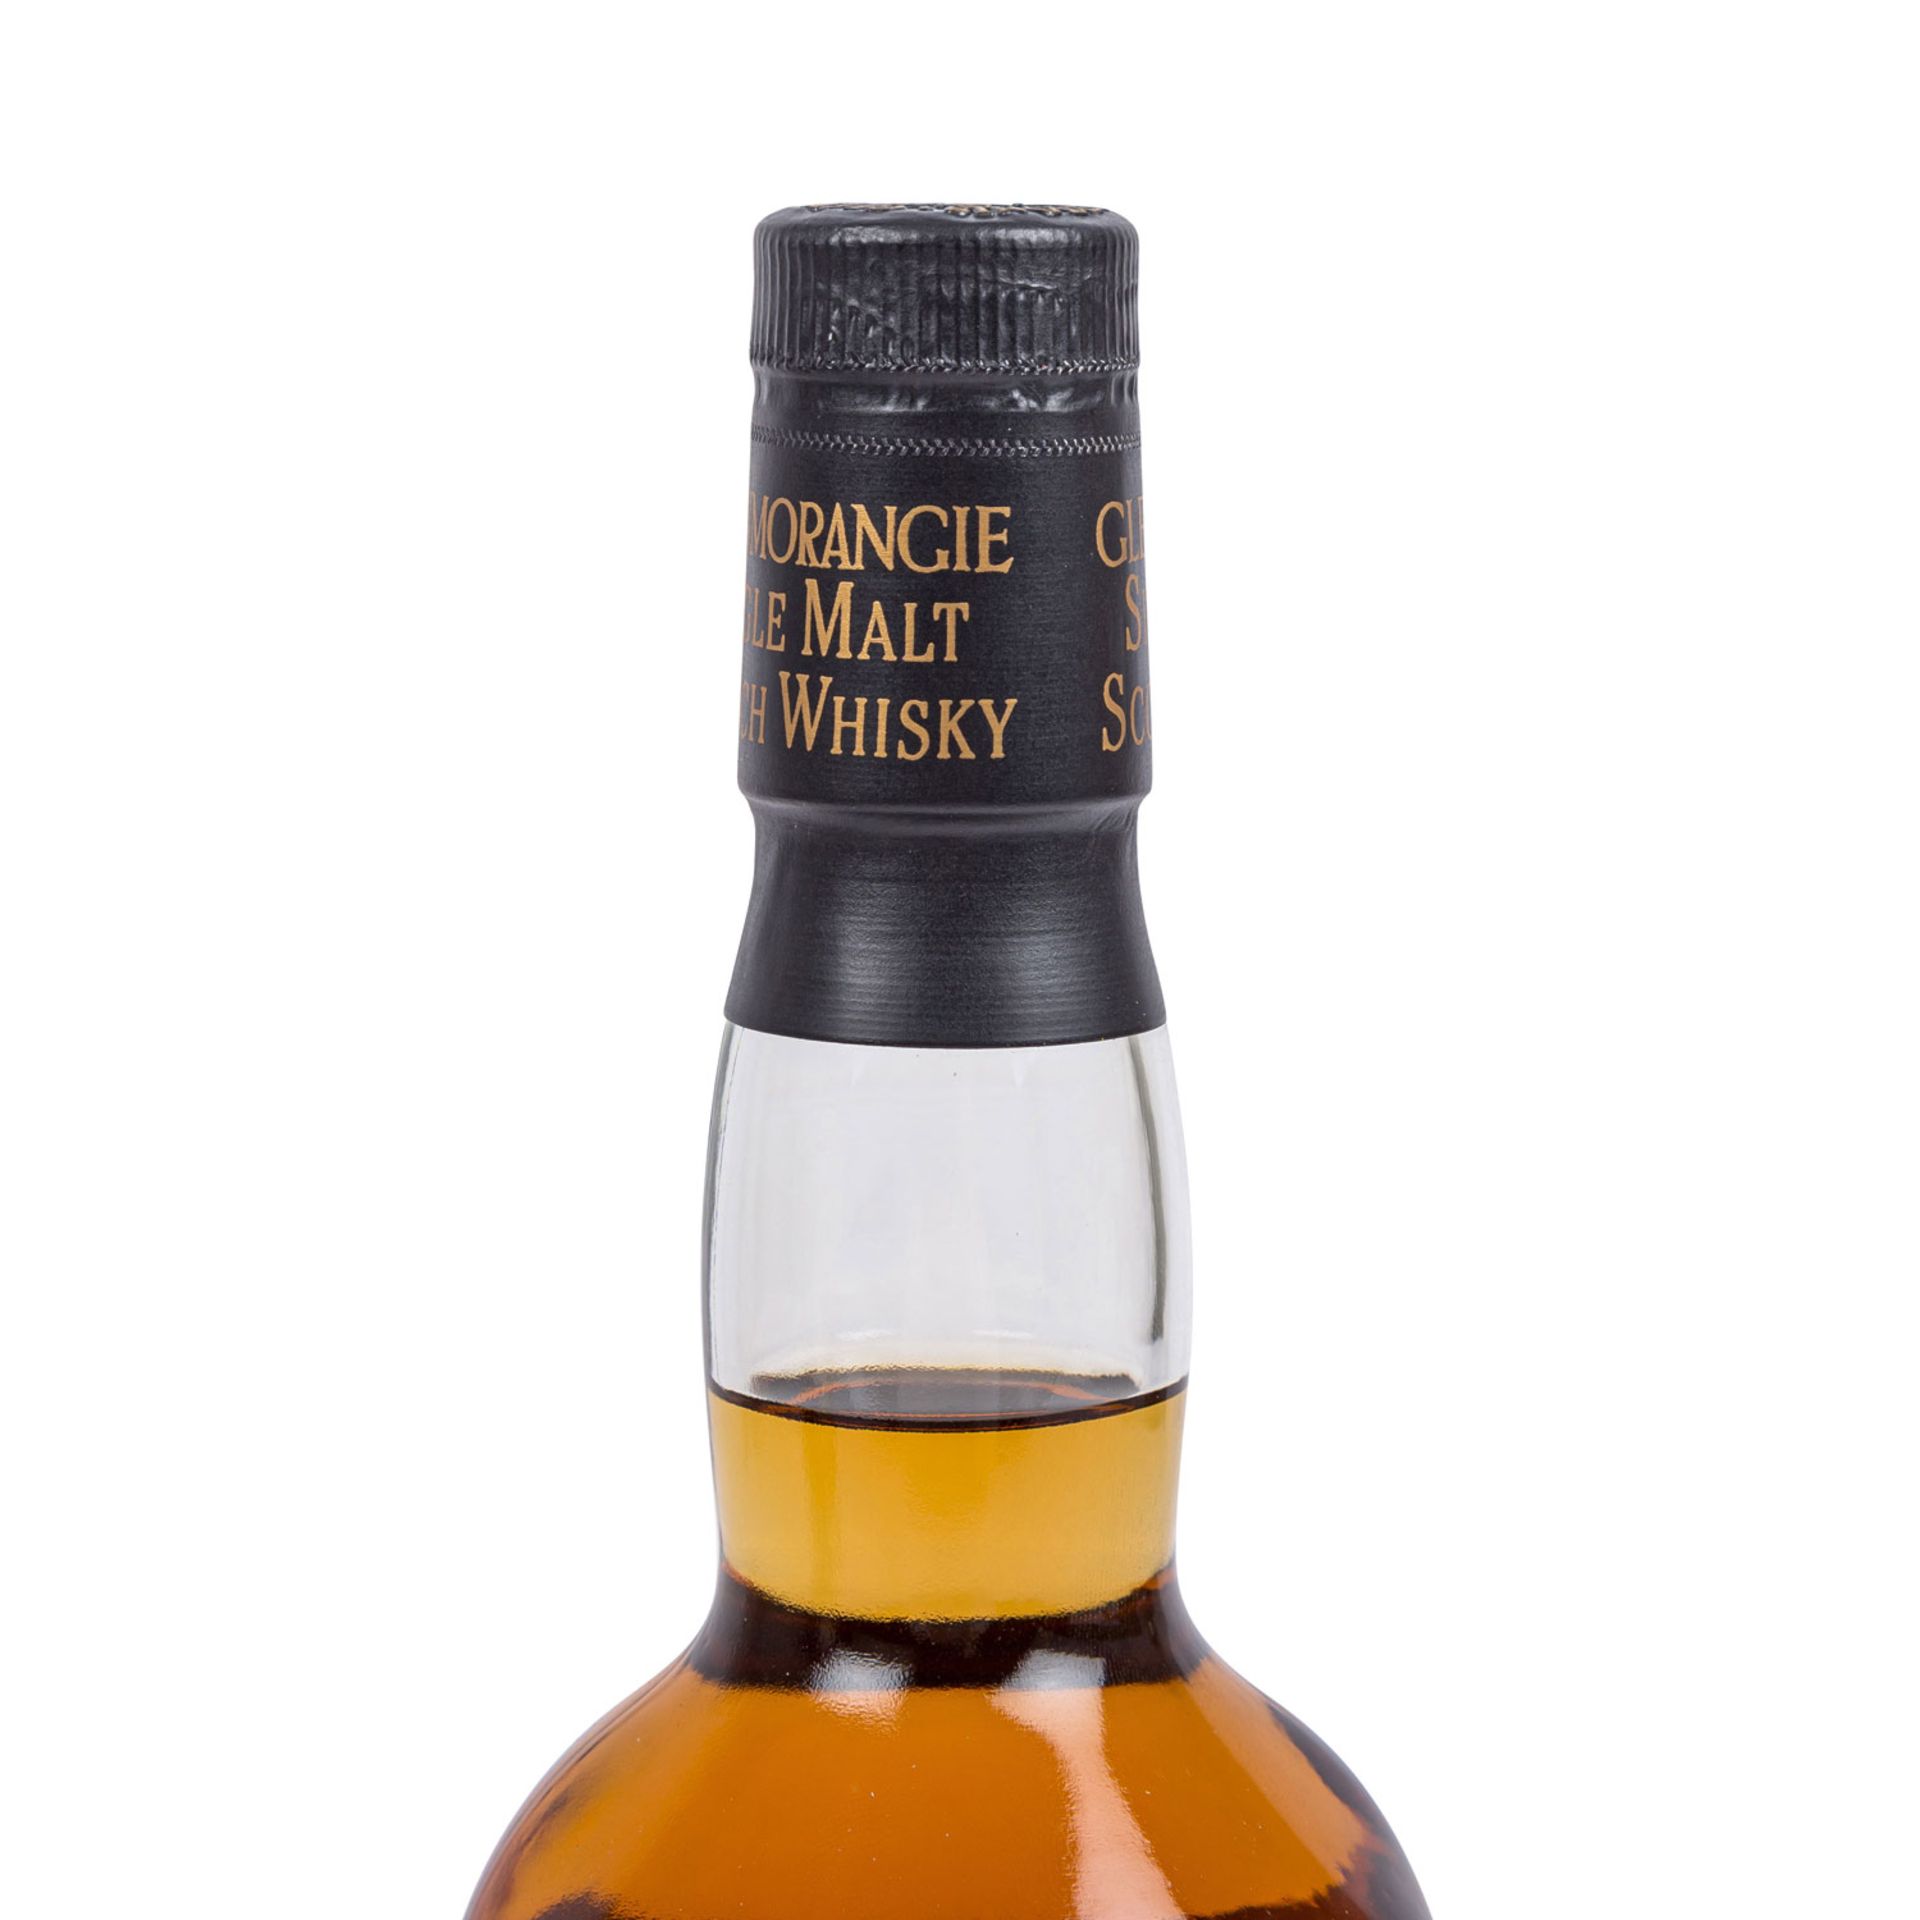 GLENMORANGIE PORT WOOD FINISH Single Malt Scotch Whisky - Image 3 of 7